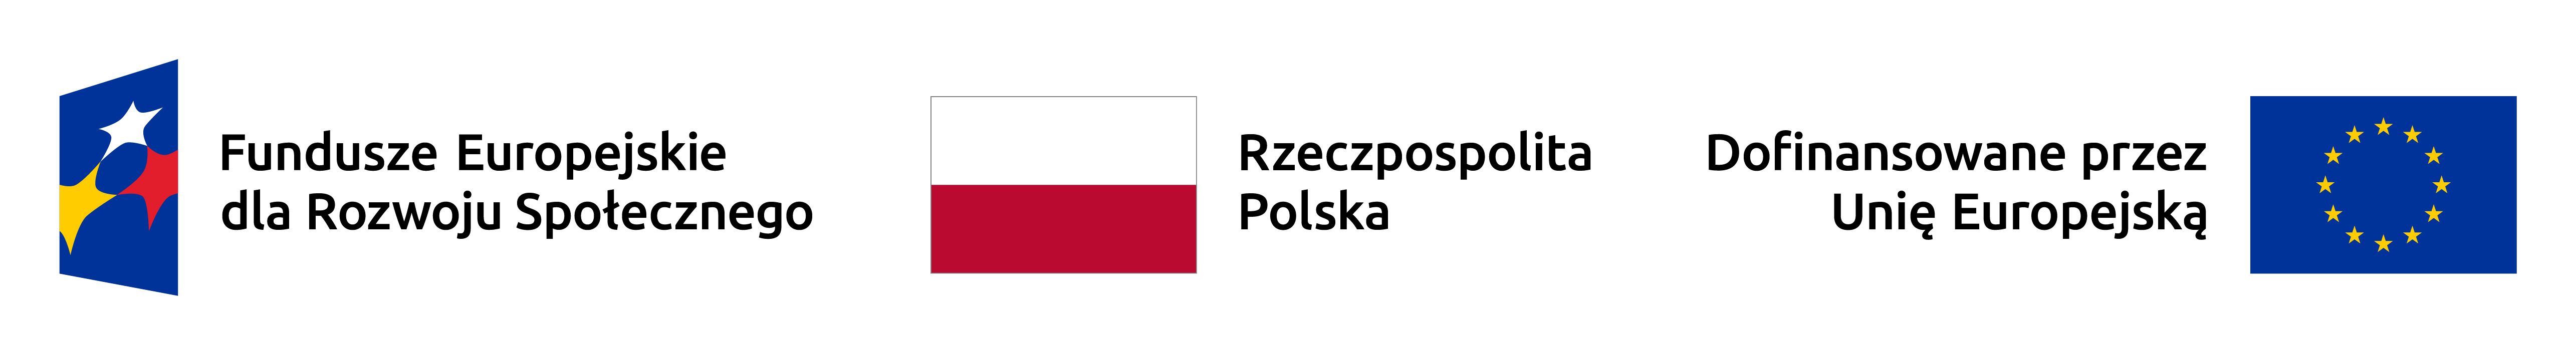 Logotyp w formie paska od lewej napis Fundusze europejskie dla rozwoju społecznego, flaga Polski napis Rzeczpospolita Polska, napis dofinansowane przez unię europejską i flaga Unii Europejskiej